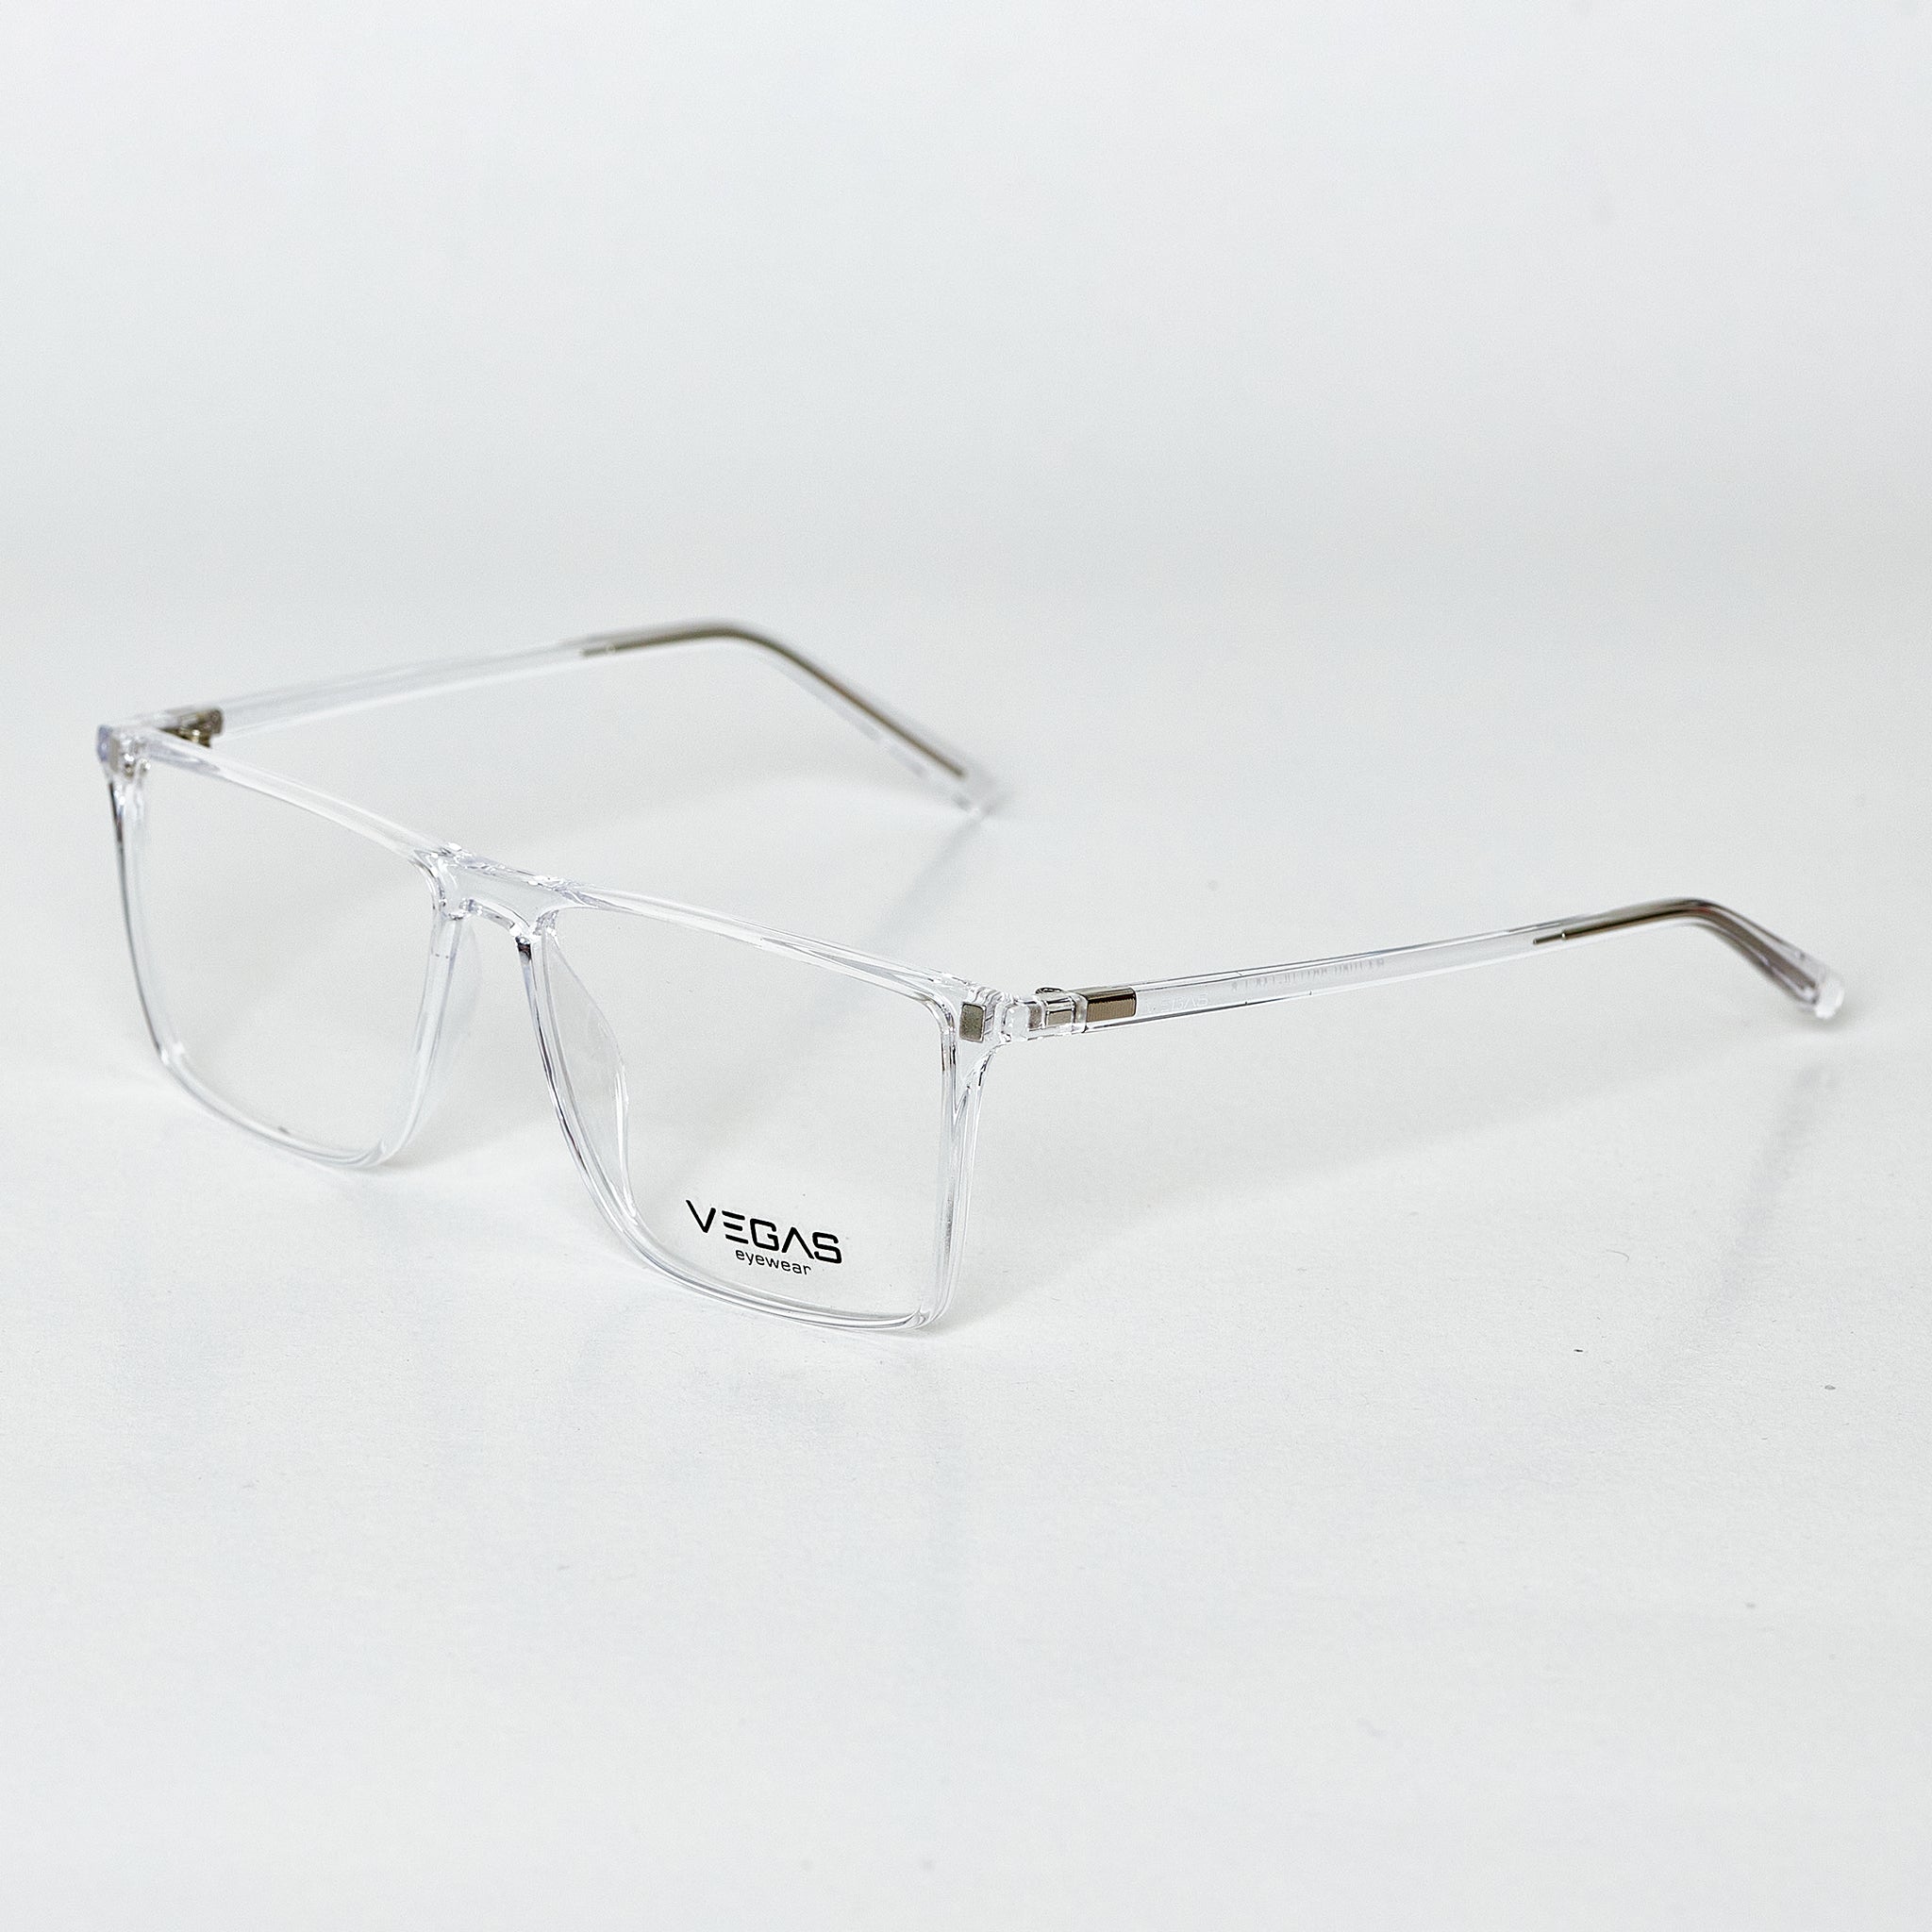 VEGAS RX7080 - COC Eyewear